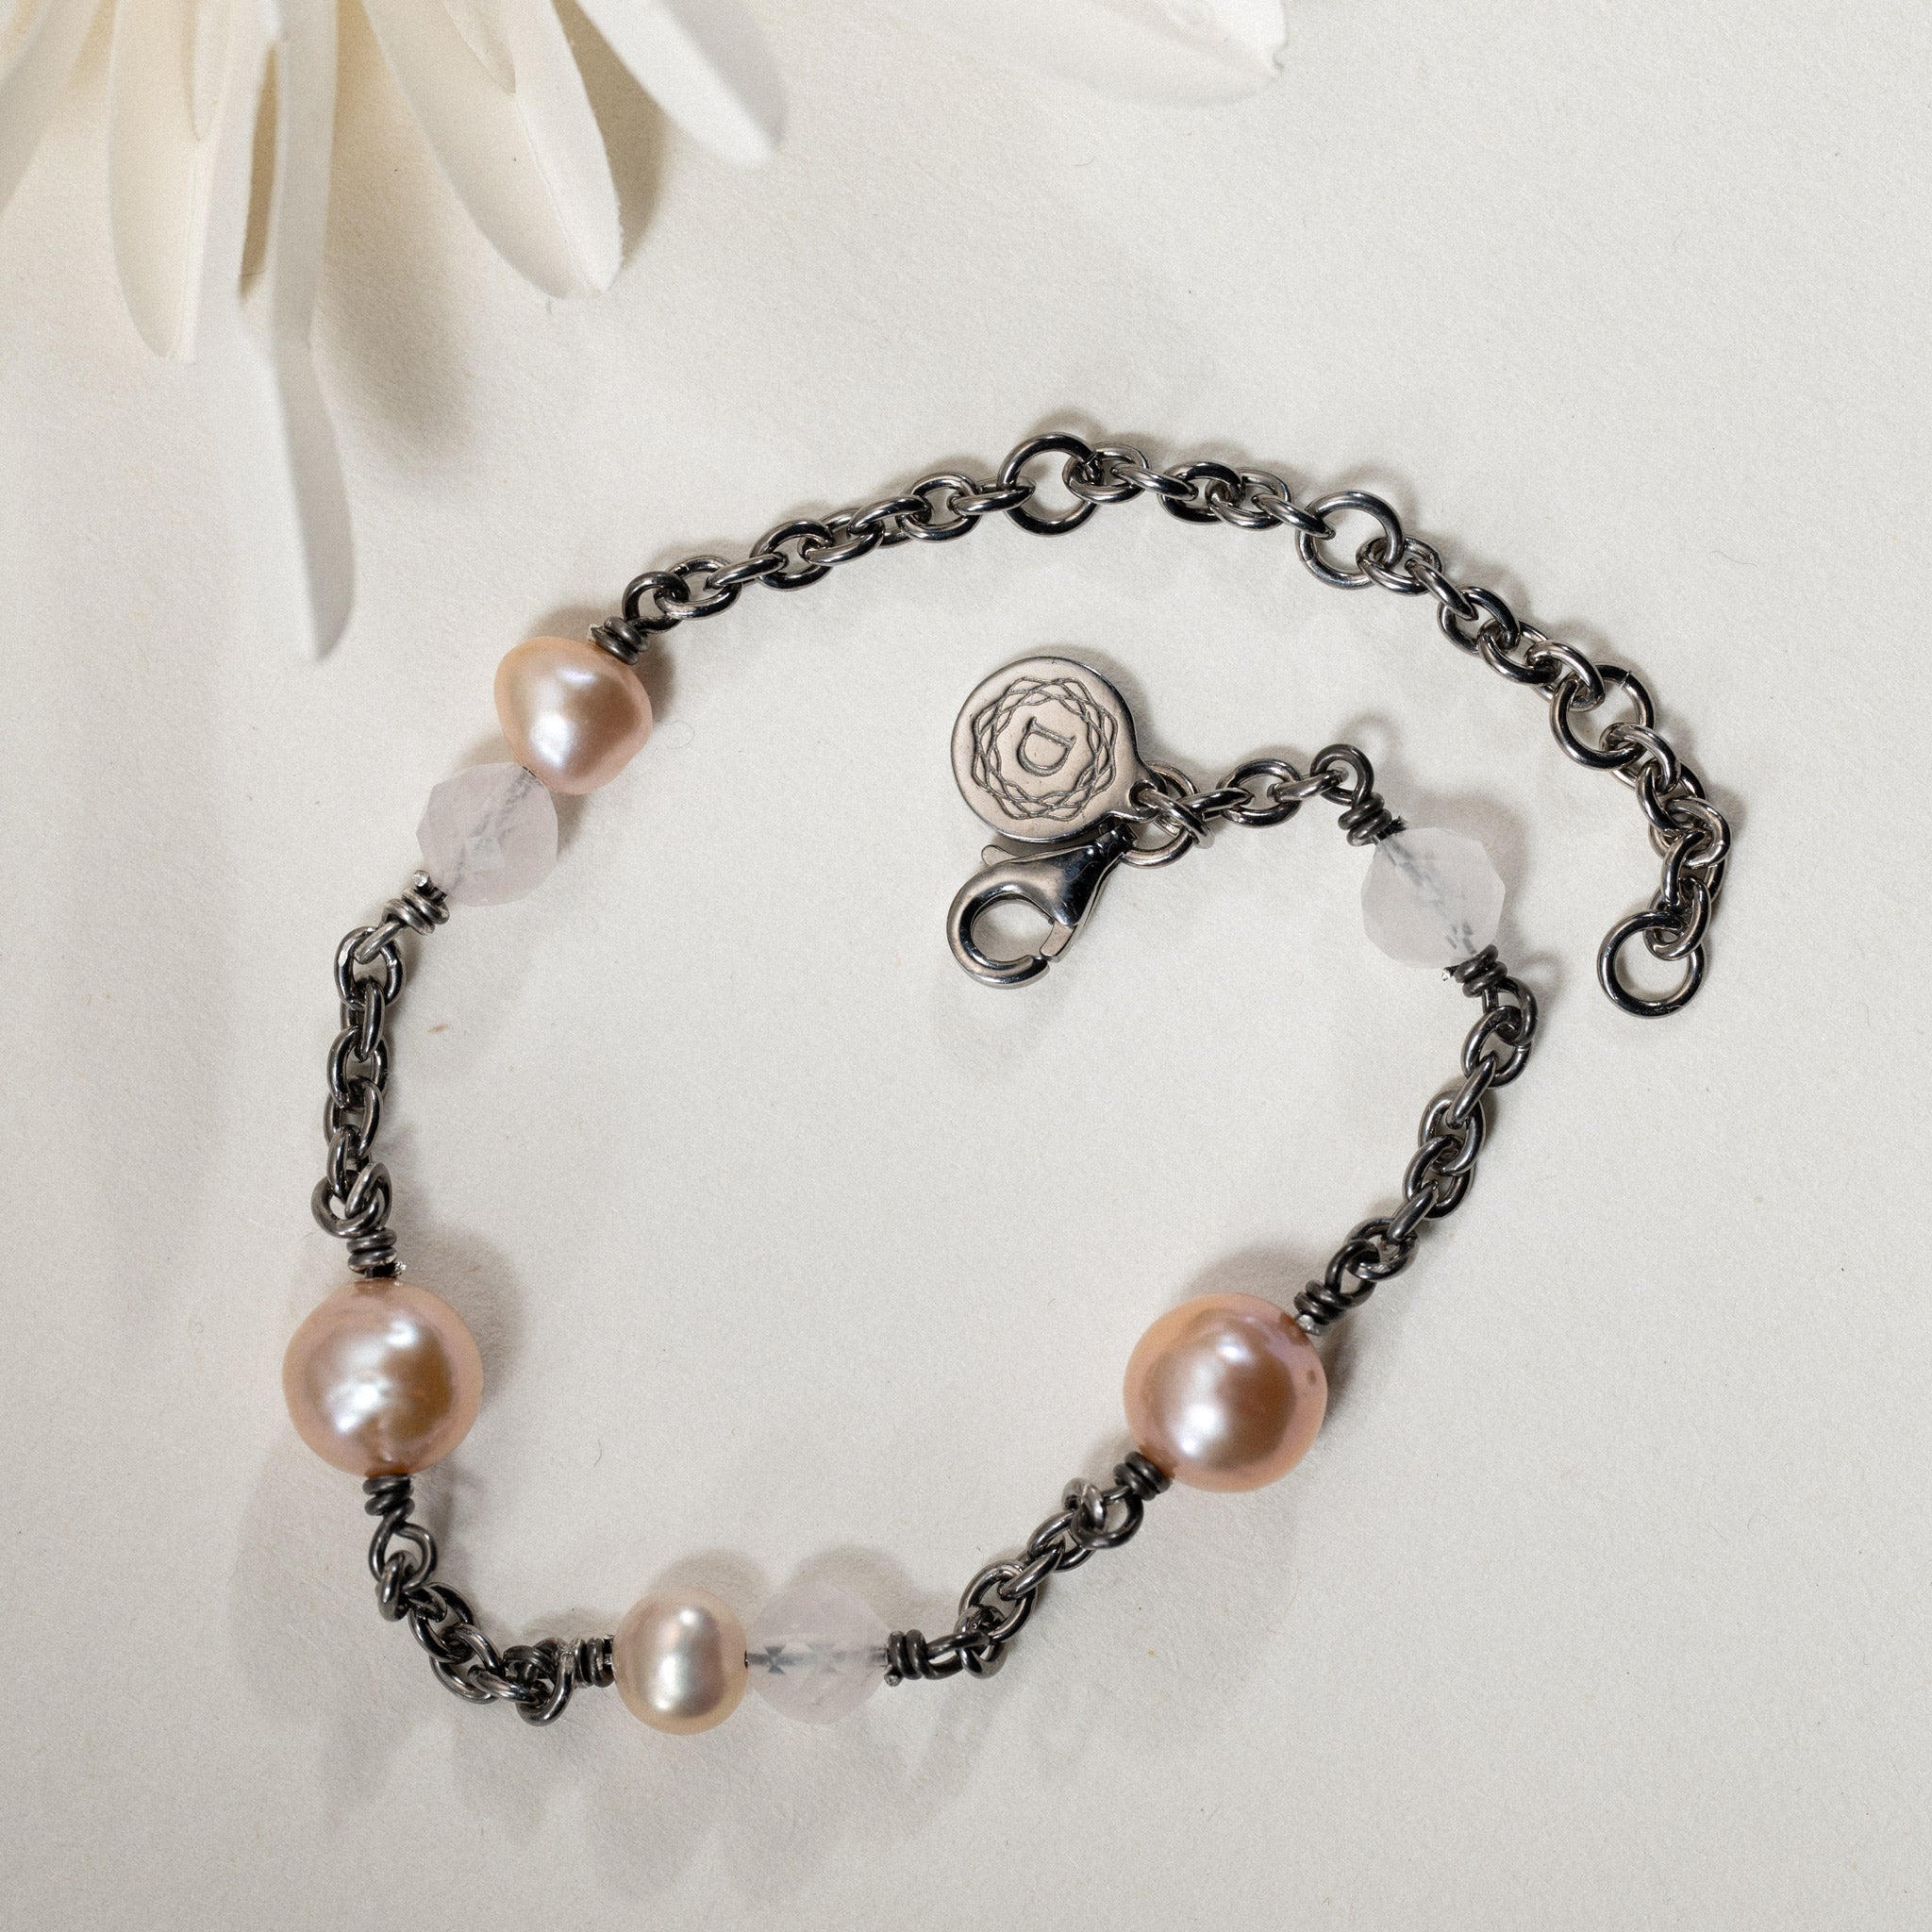 No. 09 - Freshwater pearl & semi-precious stone bracelet in black rhodium silver